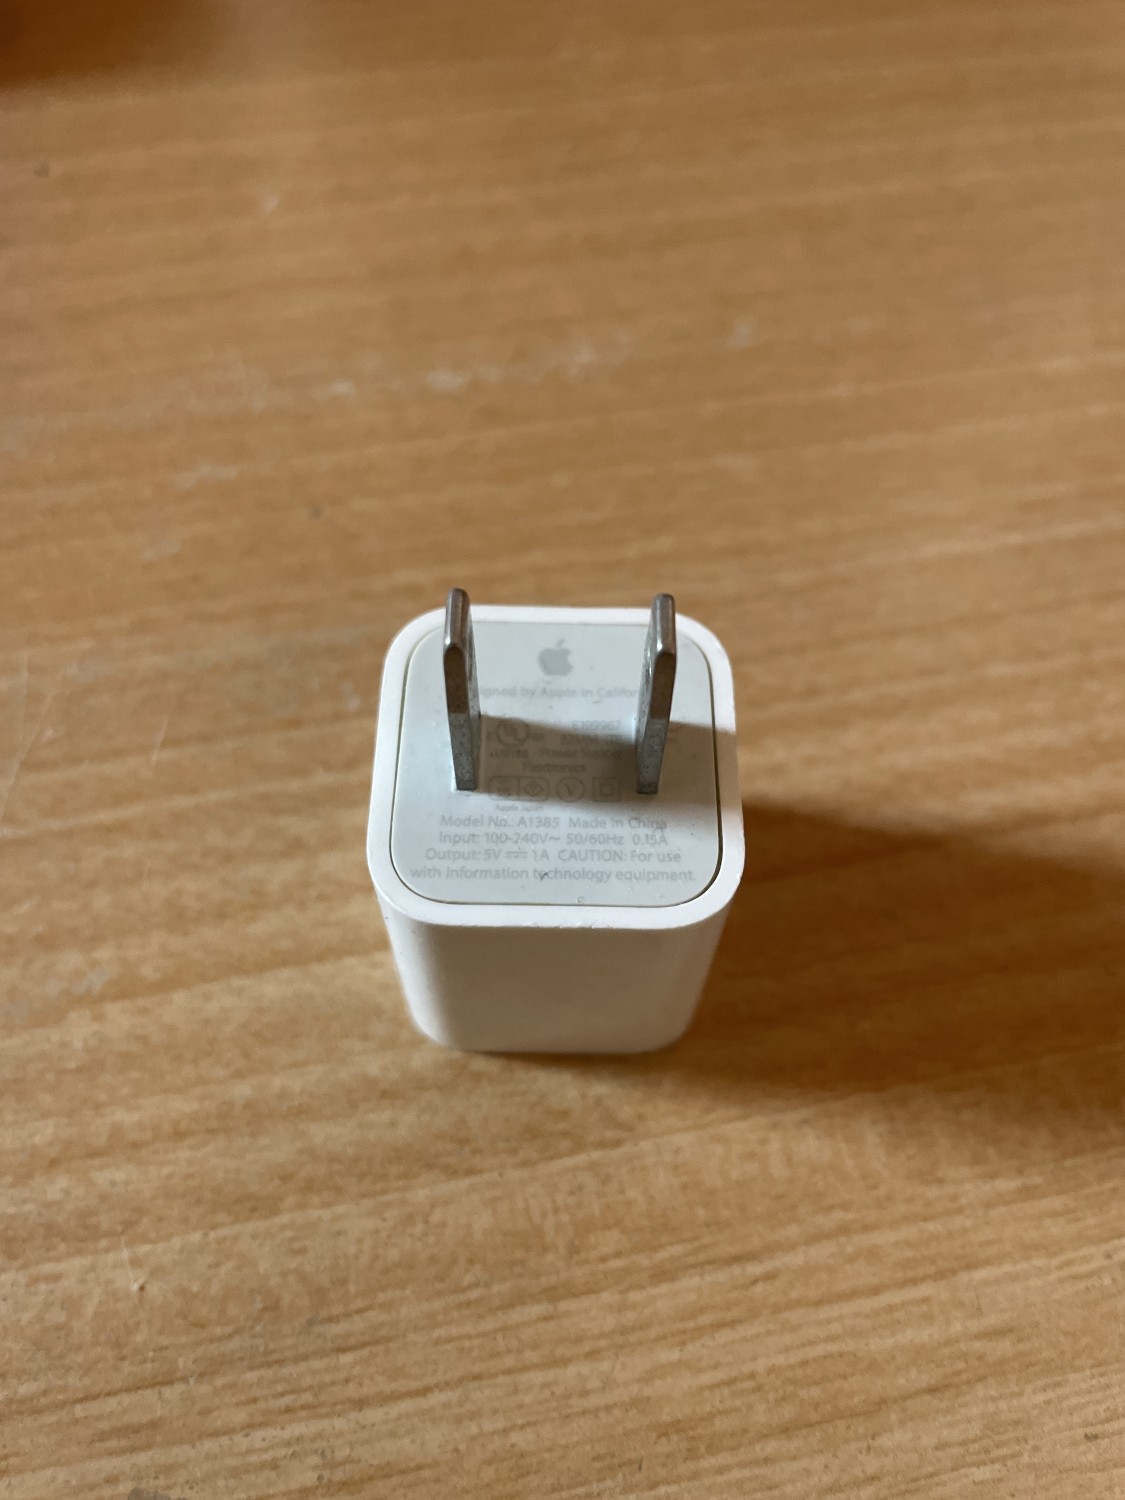 Apple USBコンセント